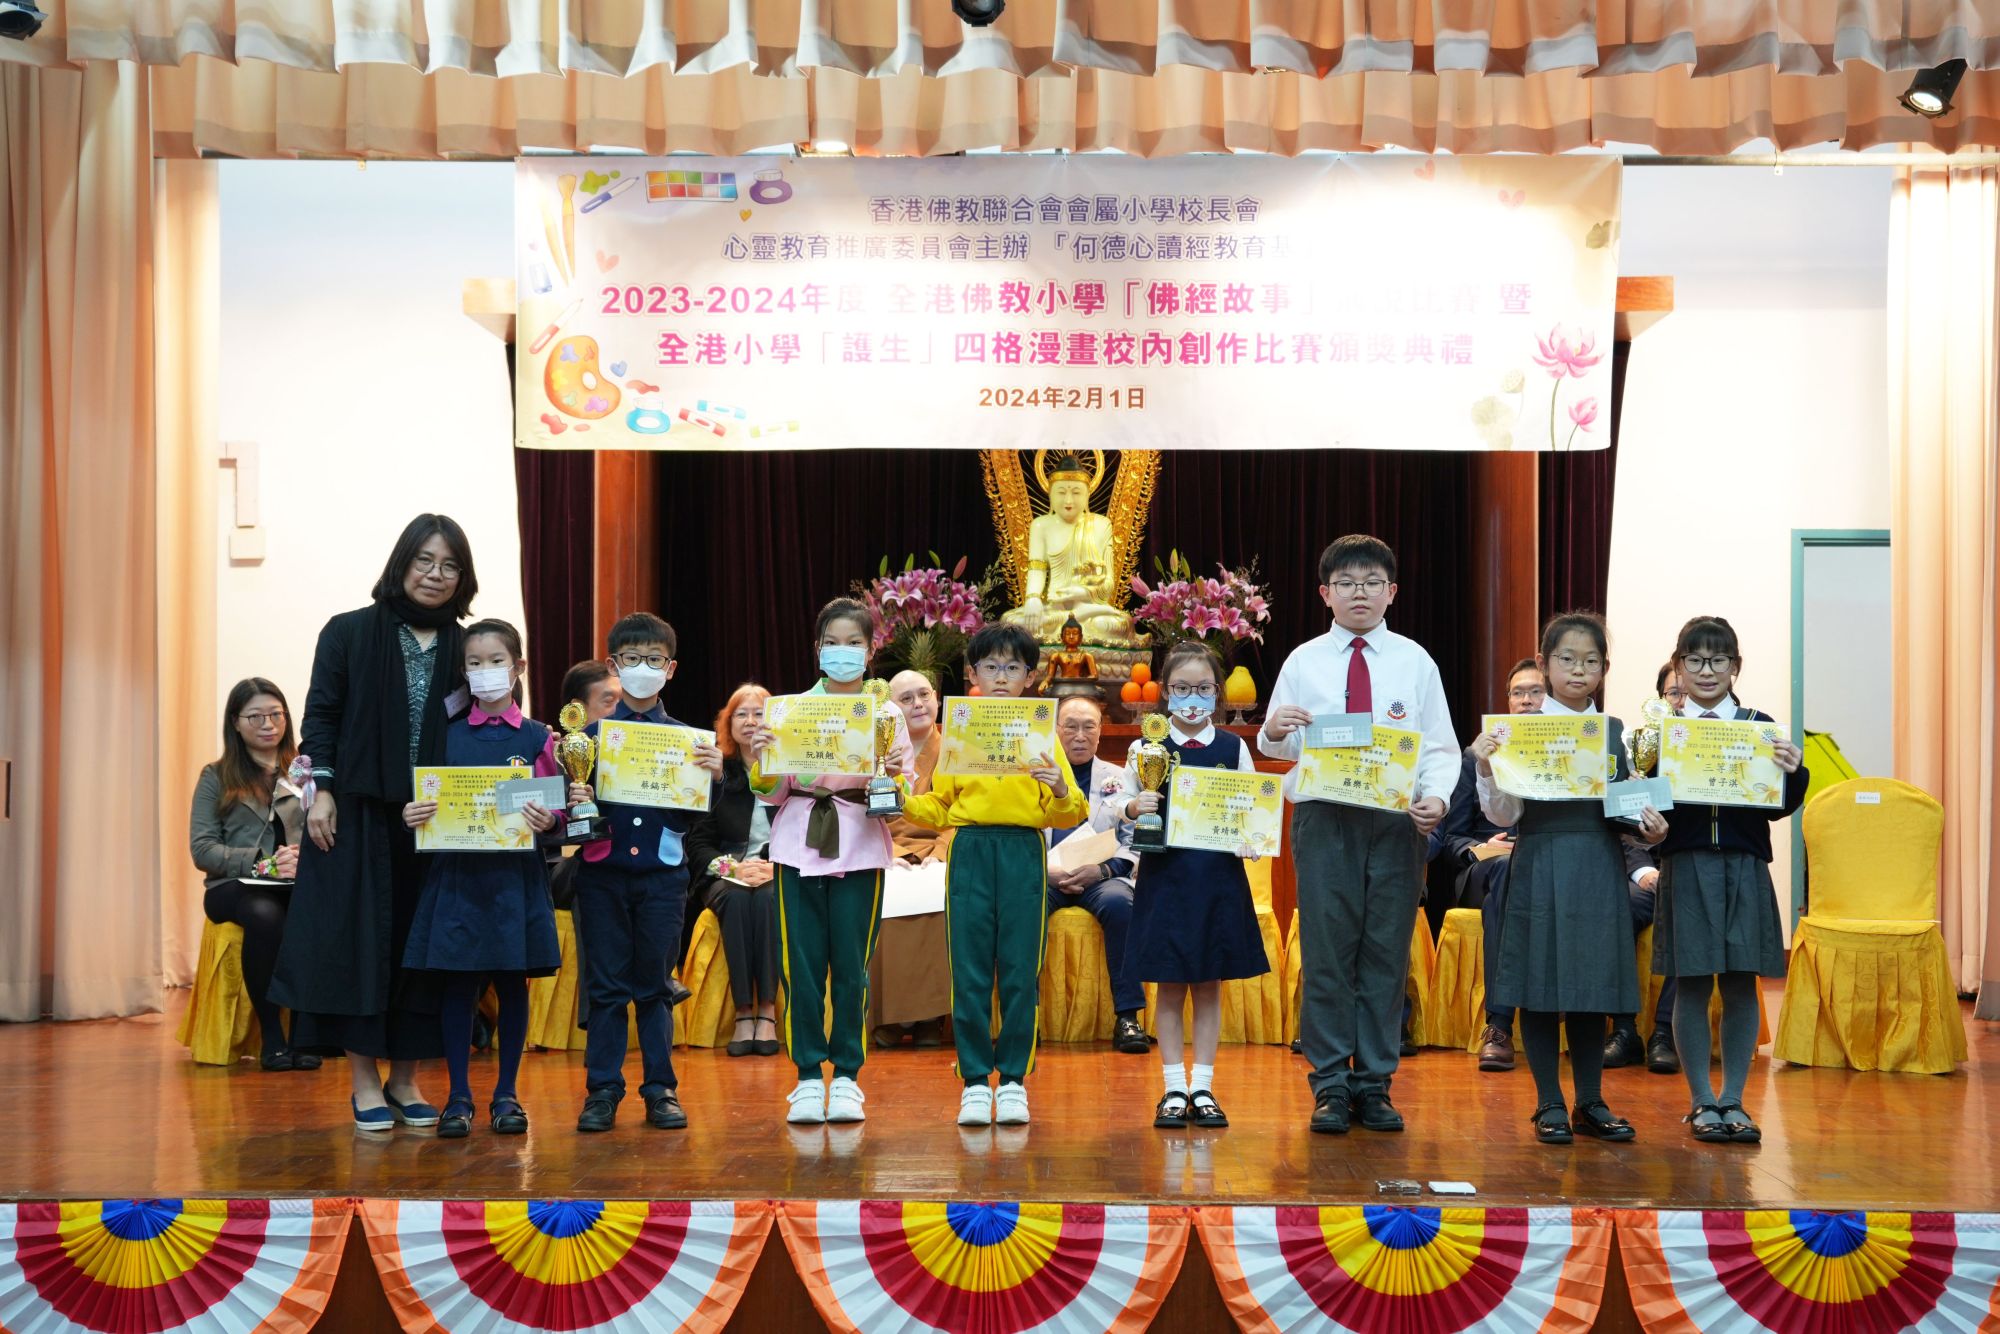 王冰博士頒發三等獎給參賽學生